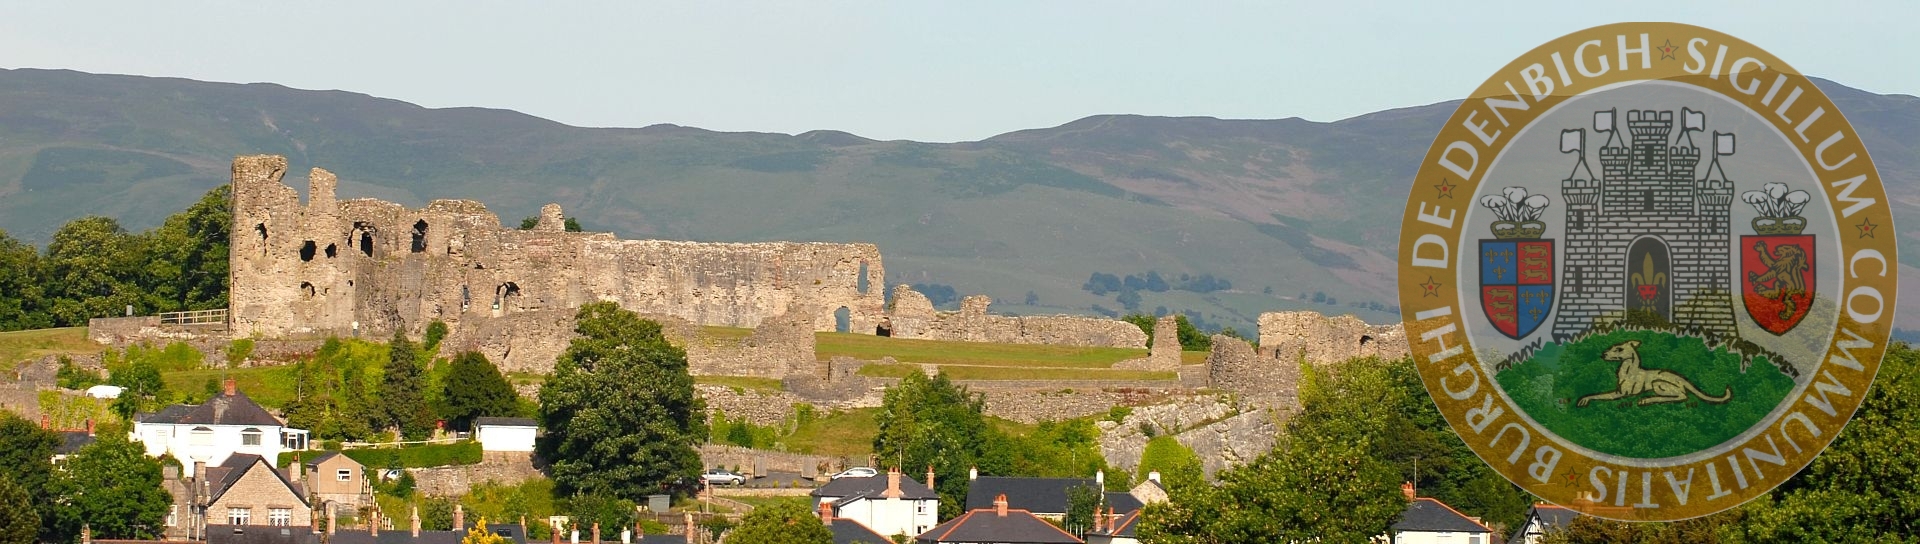 Denbigh Castle and Clwydian Hills